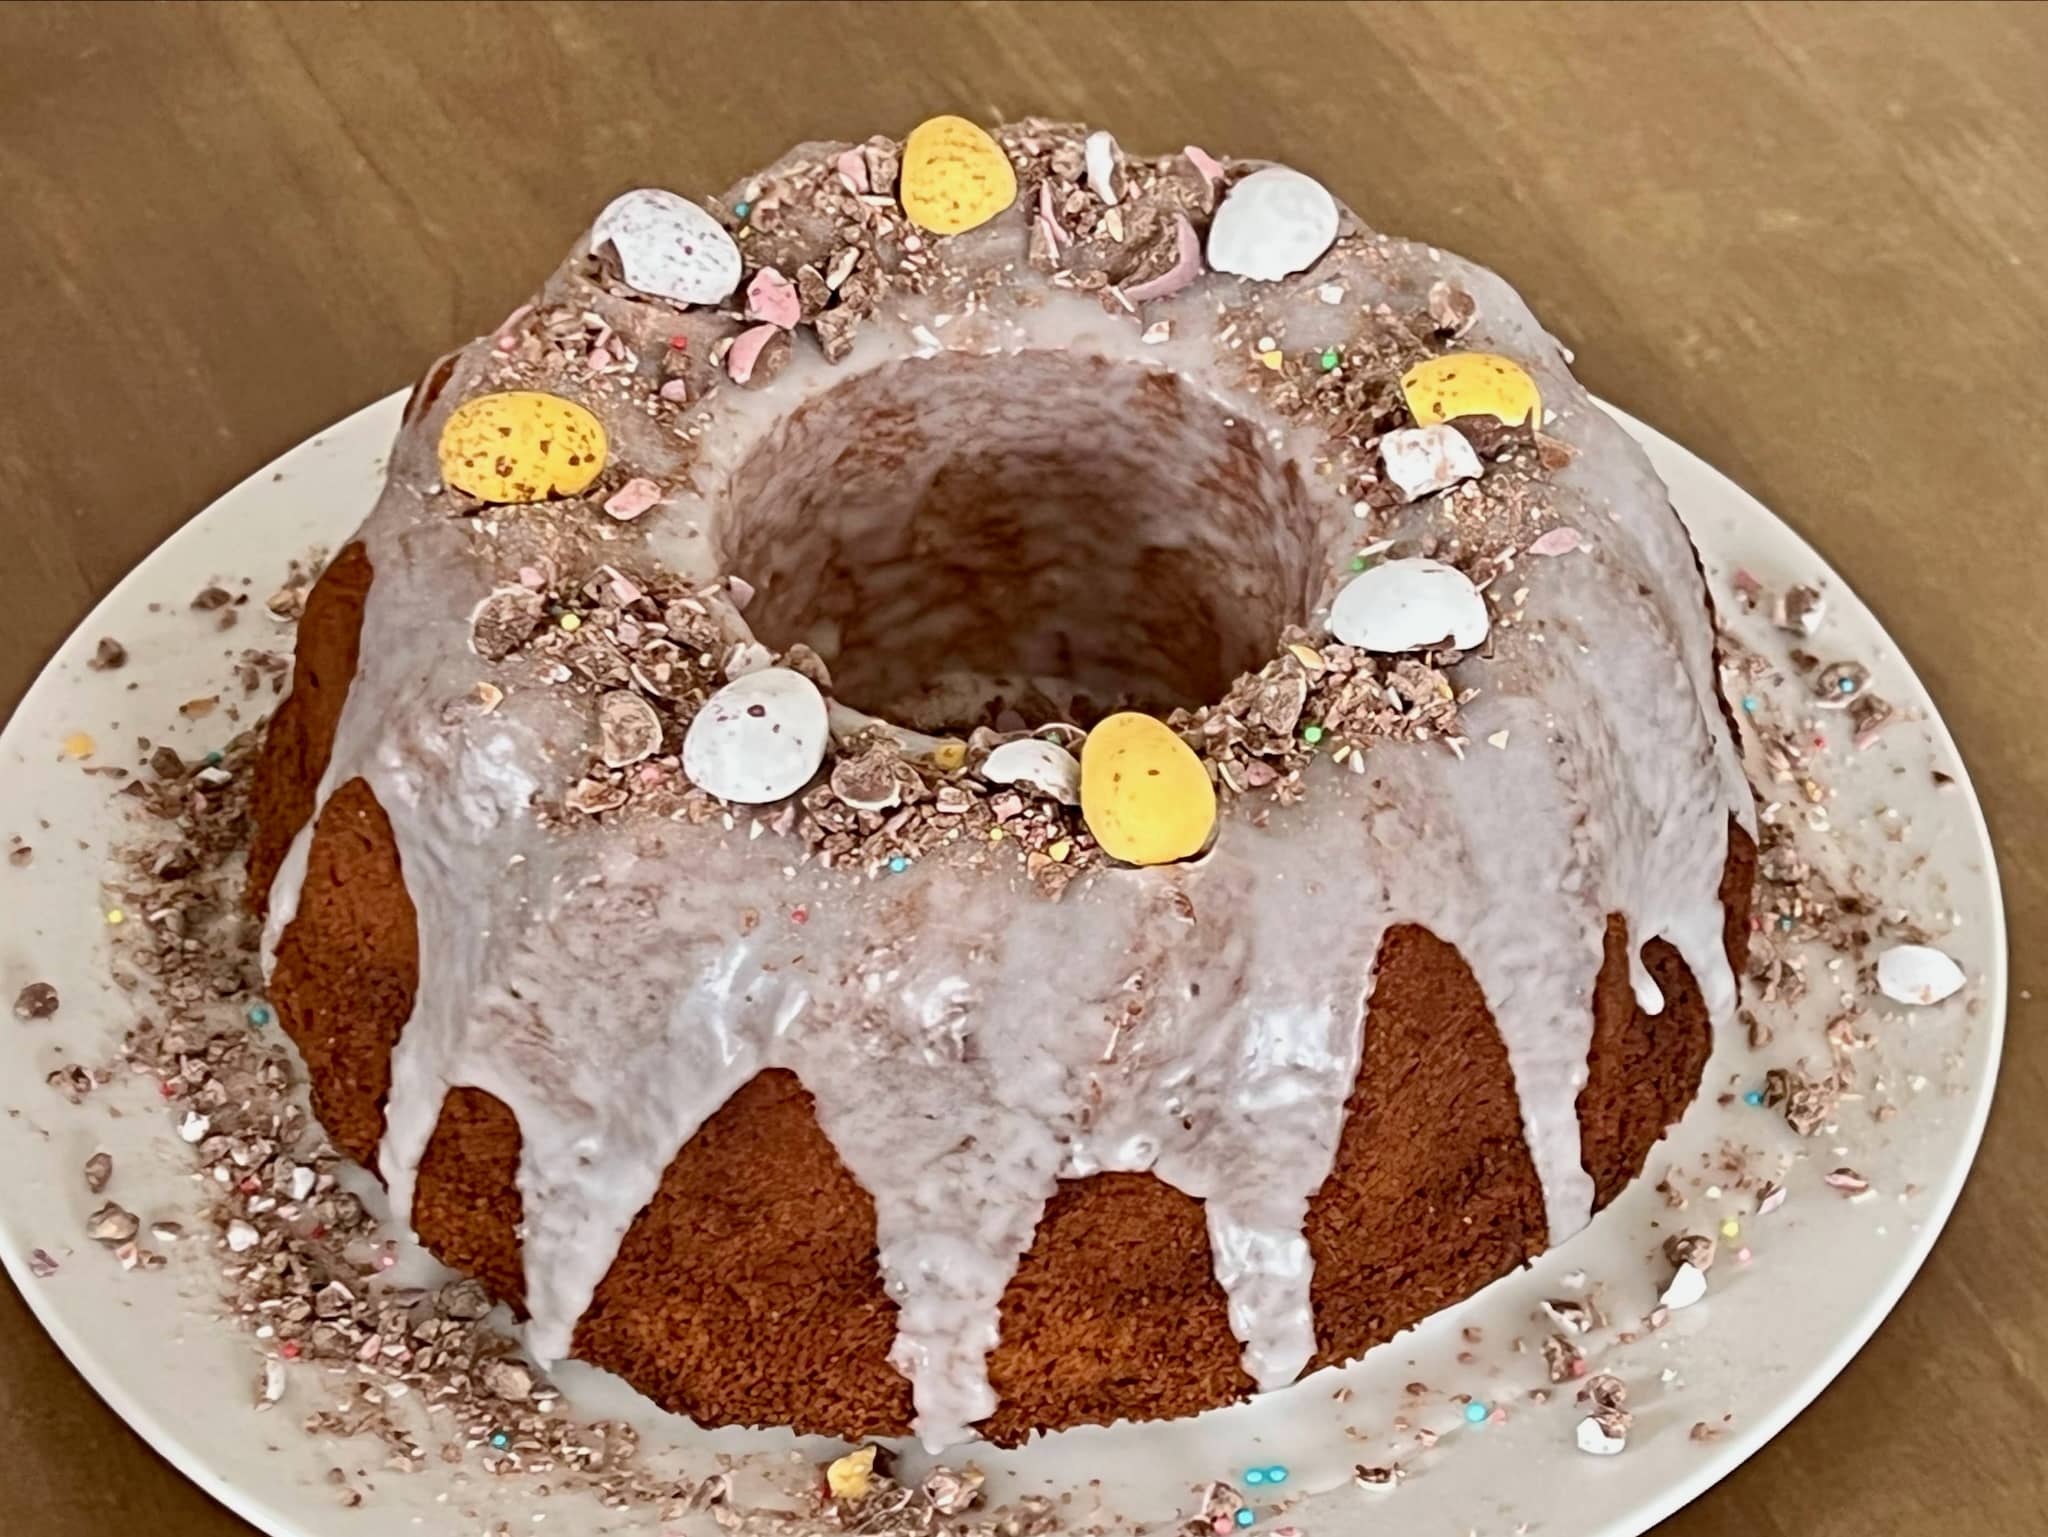 Babka cytrynowa – Lemon Bundt Cake – Glazed &amp; Decorated